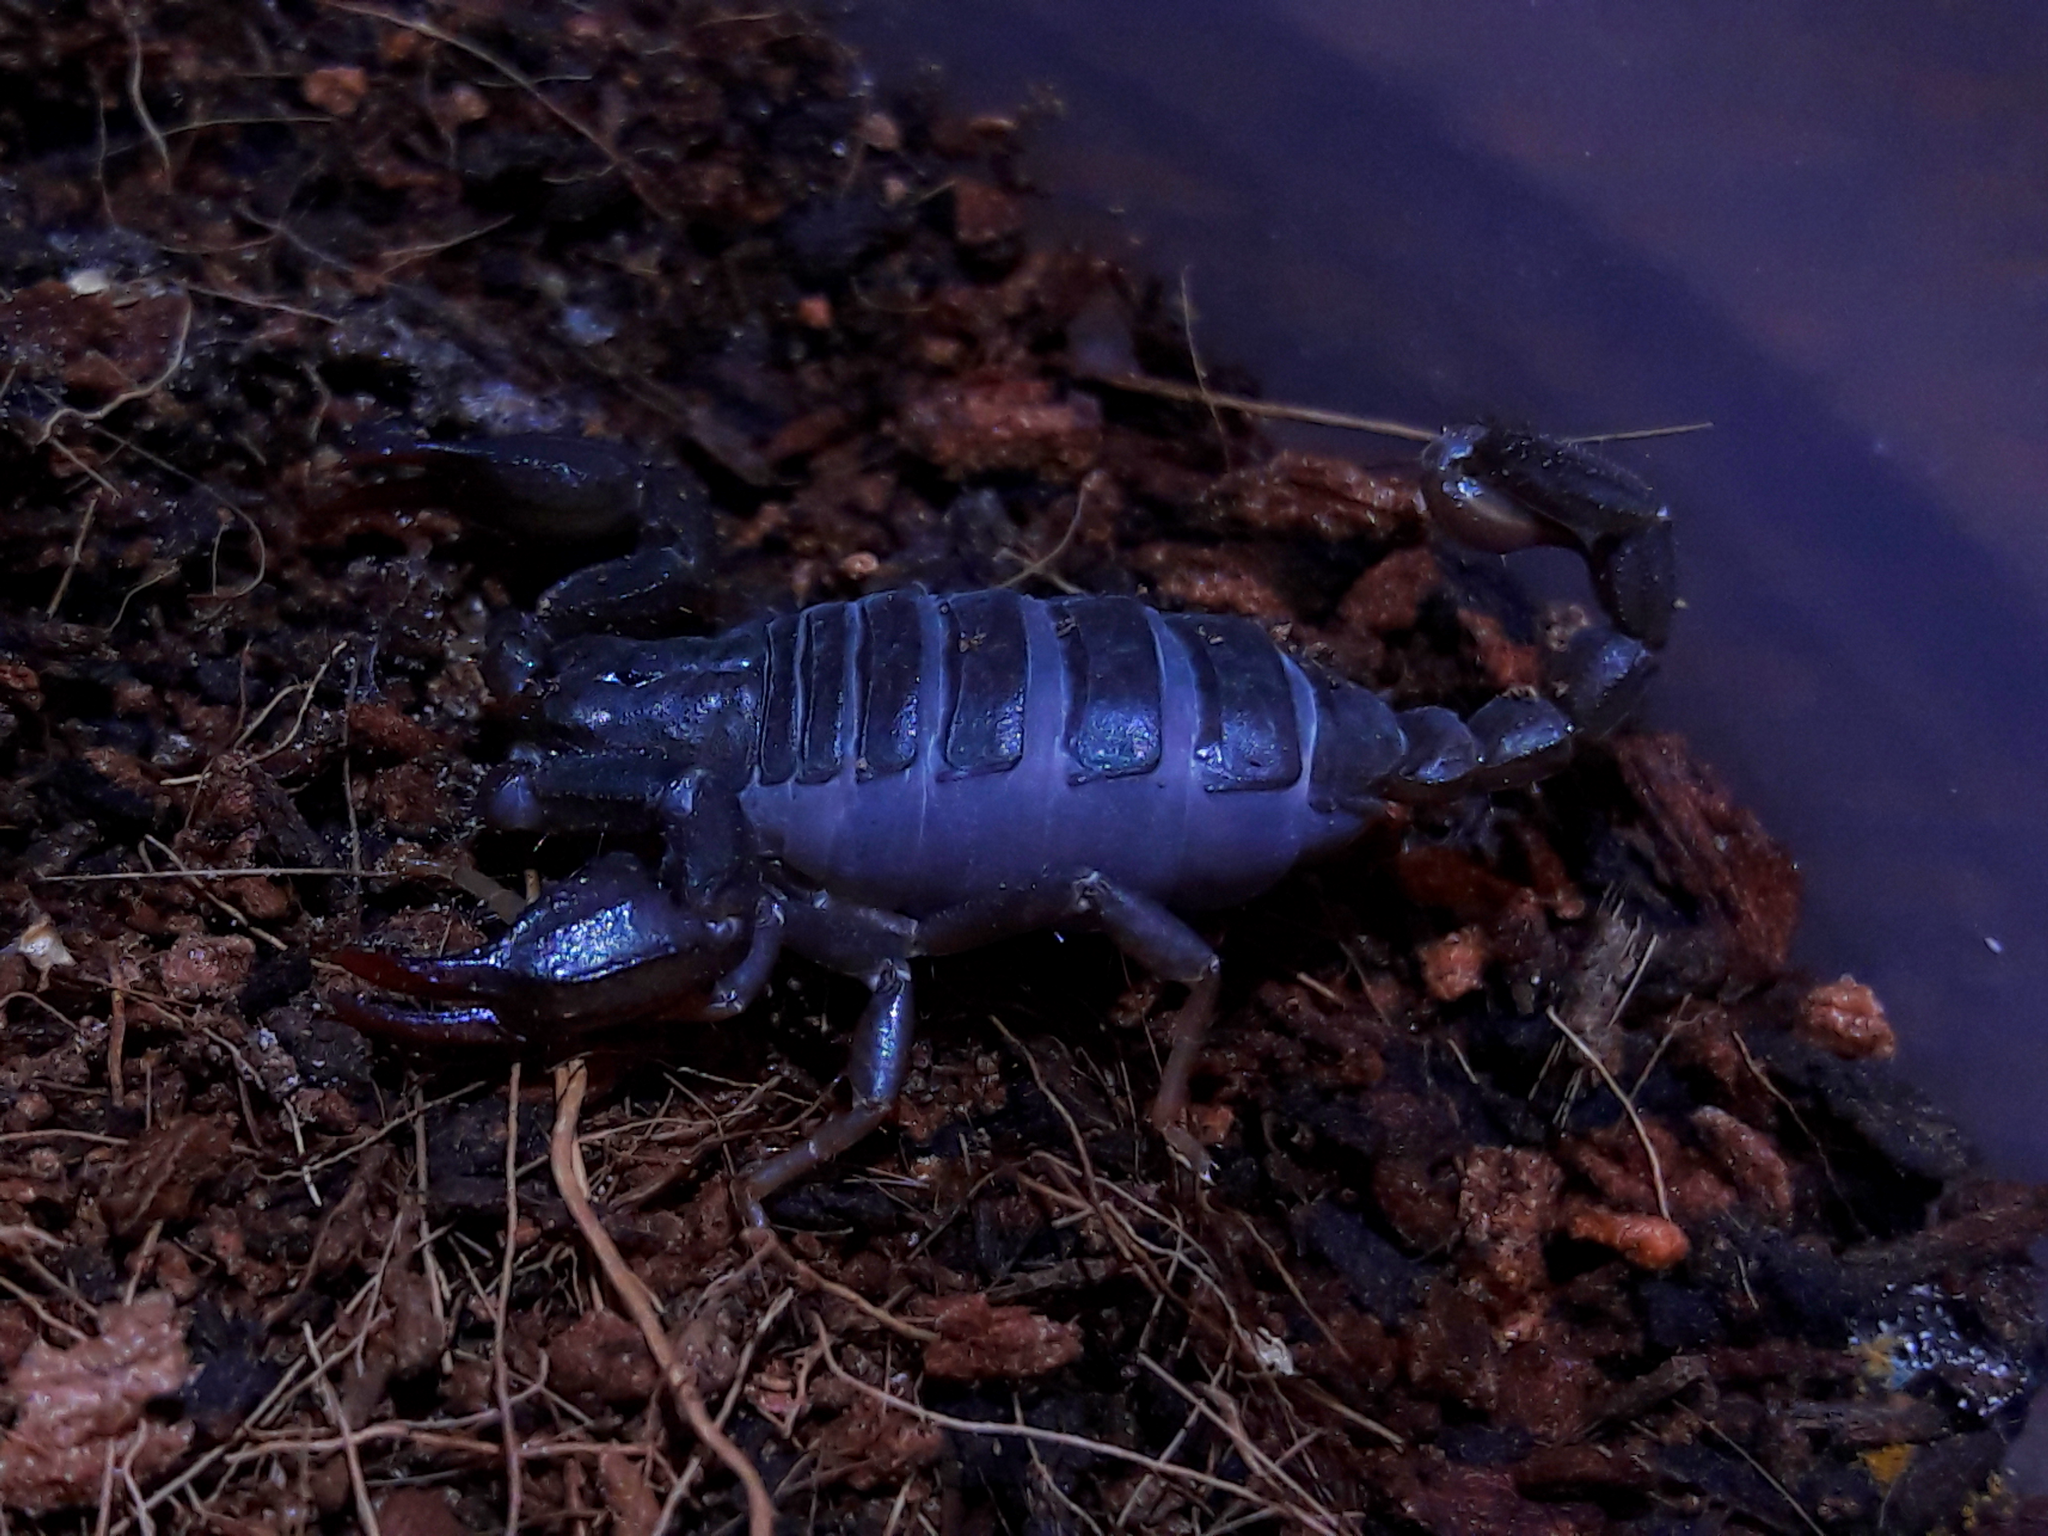 Uroctonus mordax 'California forest scorpion'